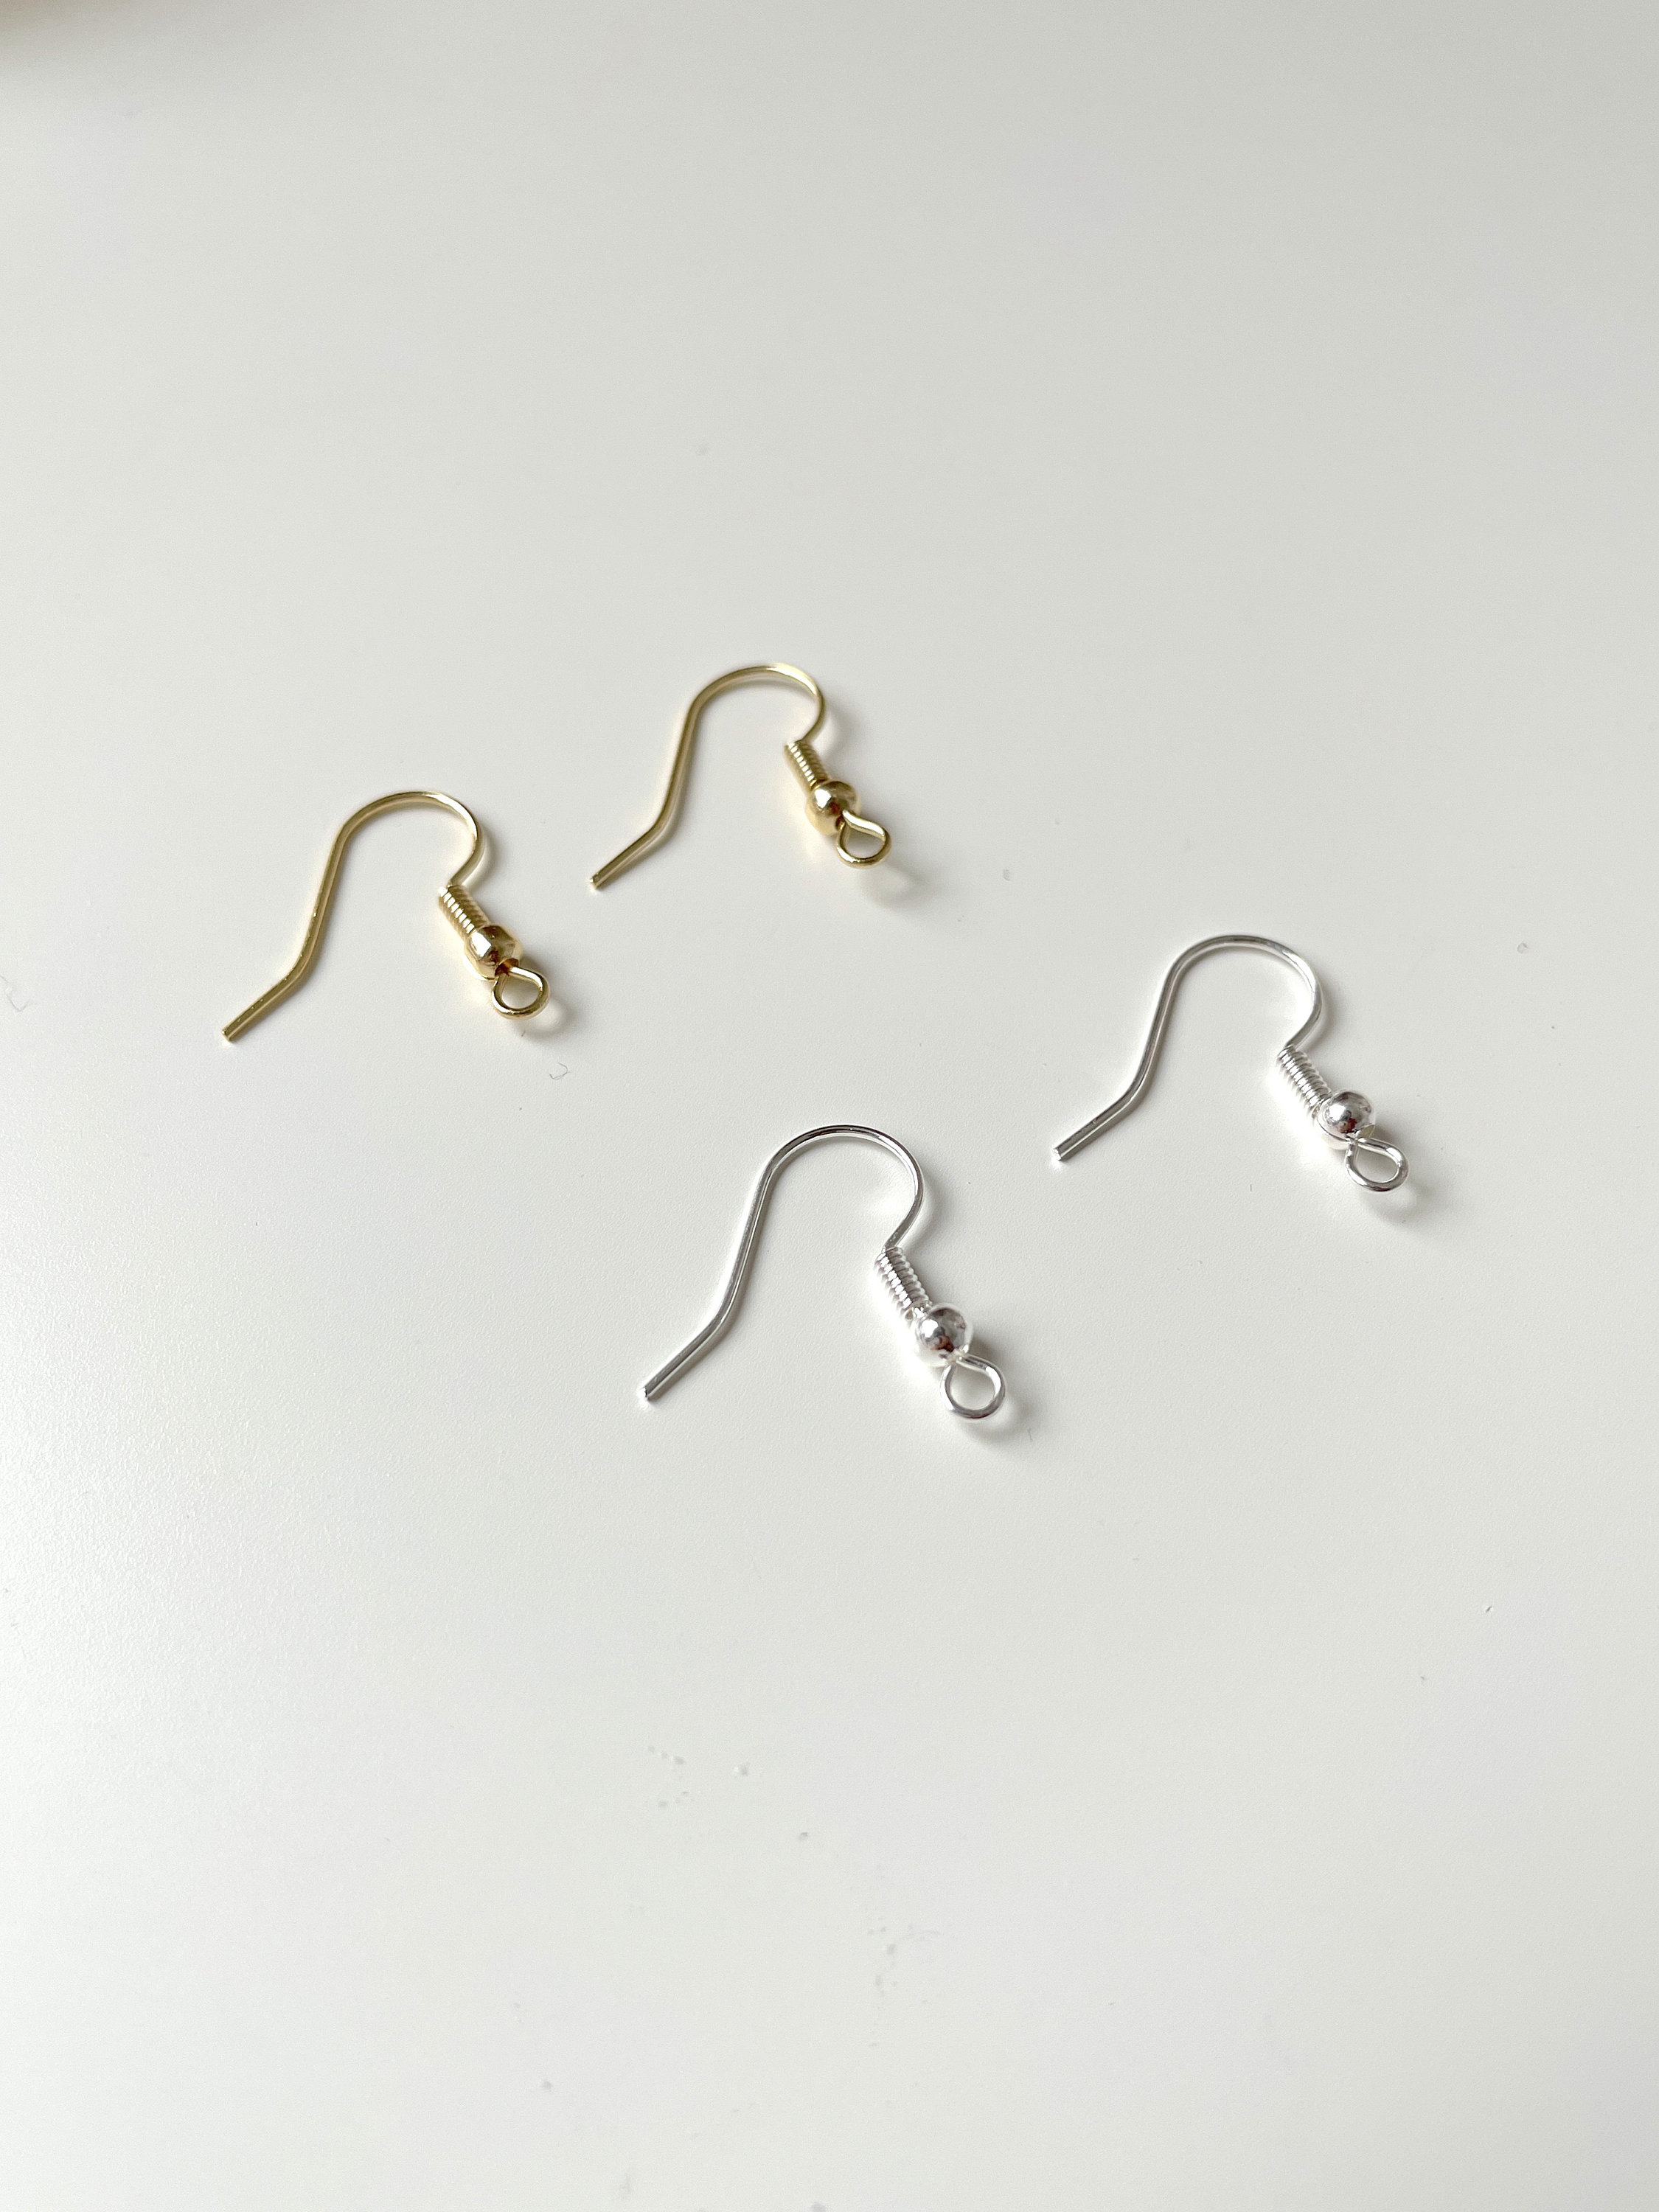 10 pcs 14k gold plated earring hooks french earring hooks | Etsy